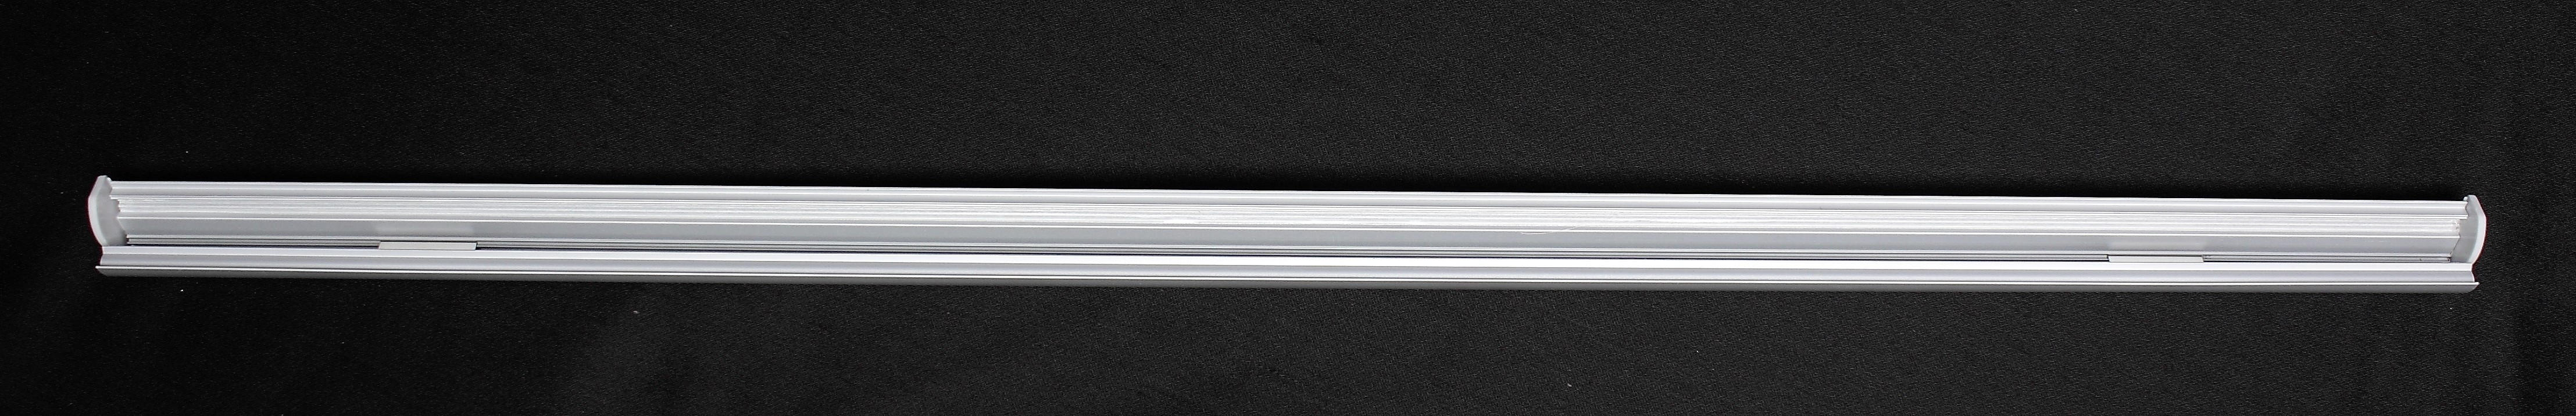 FLÄCHENVORHANG   halbtransparent   60/245 cm  - Grau, Design, Textil (60/245cm) - Schmidt W. Gmbh